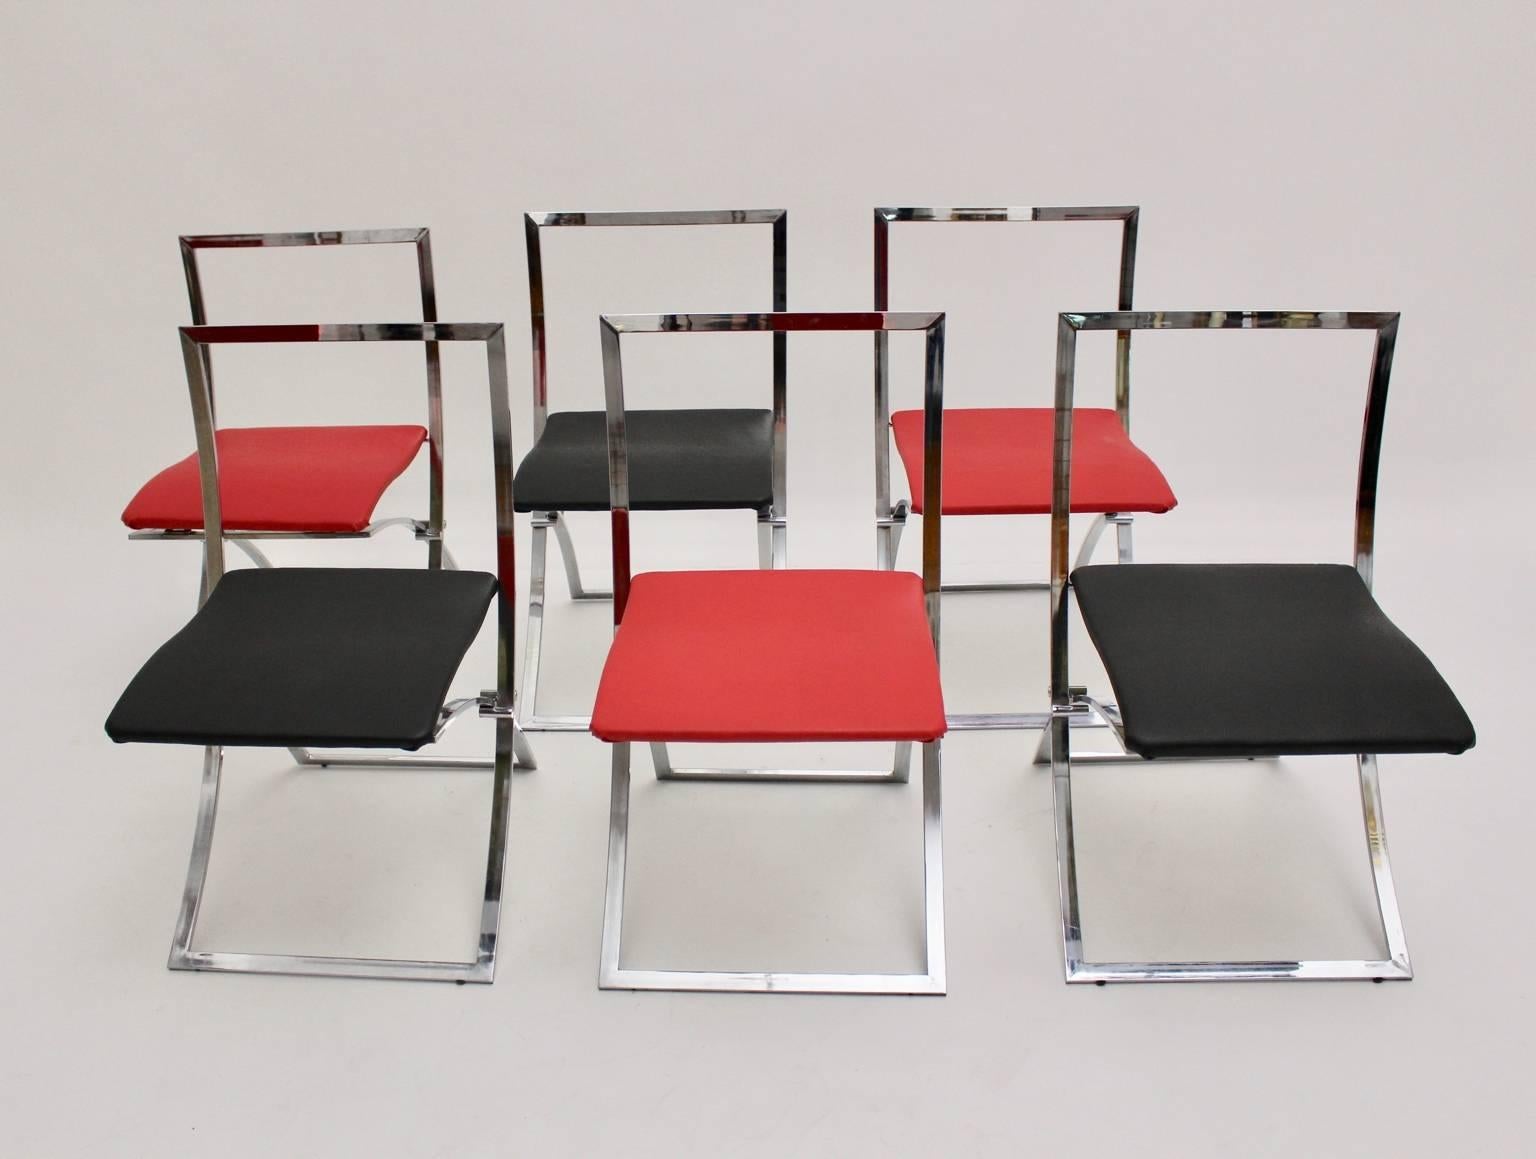 Mid Century Modern vintage Esszimmerstühle Modell Luisa entworfen von dem italienischen Architekten Marcello Cuneo, 1970, Italien und ausgeführt von Mobel.
Die klappbaren Esszimmerstühle wirken elegant und zeitlos. 
Der Sockel ist verchromt.  Drei